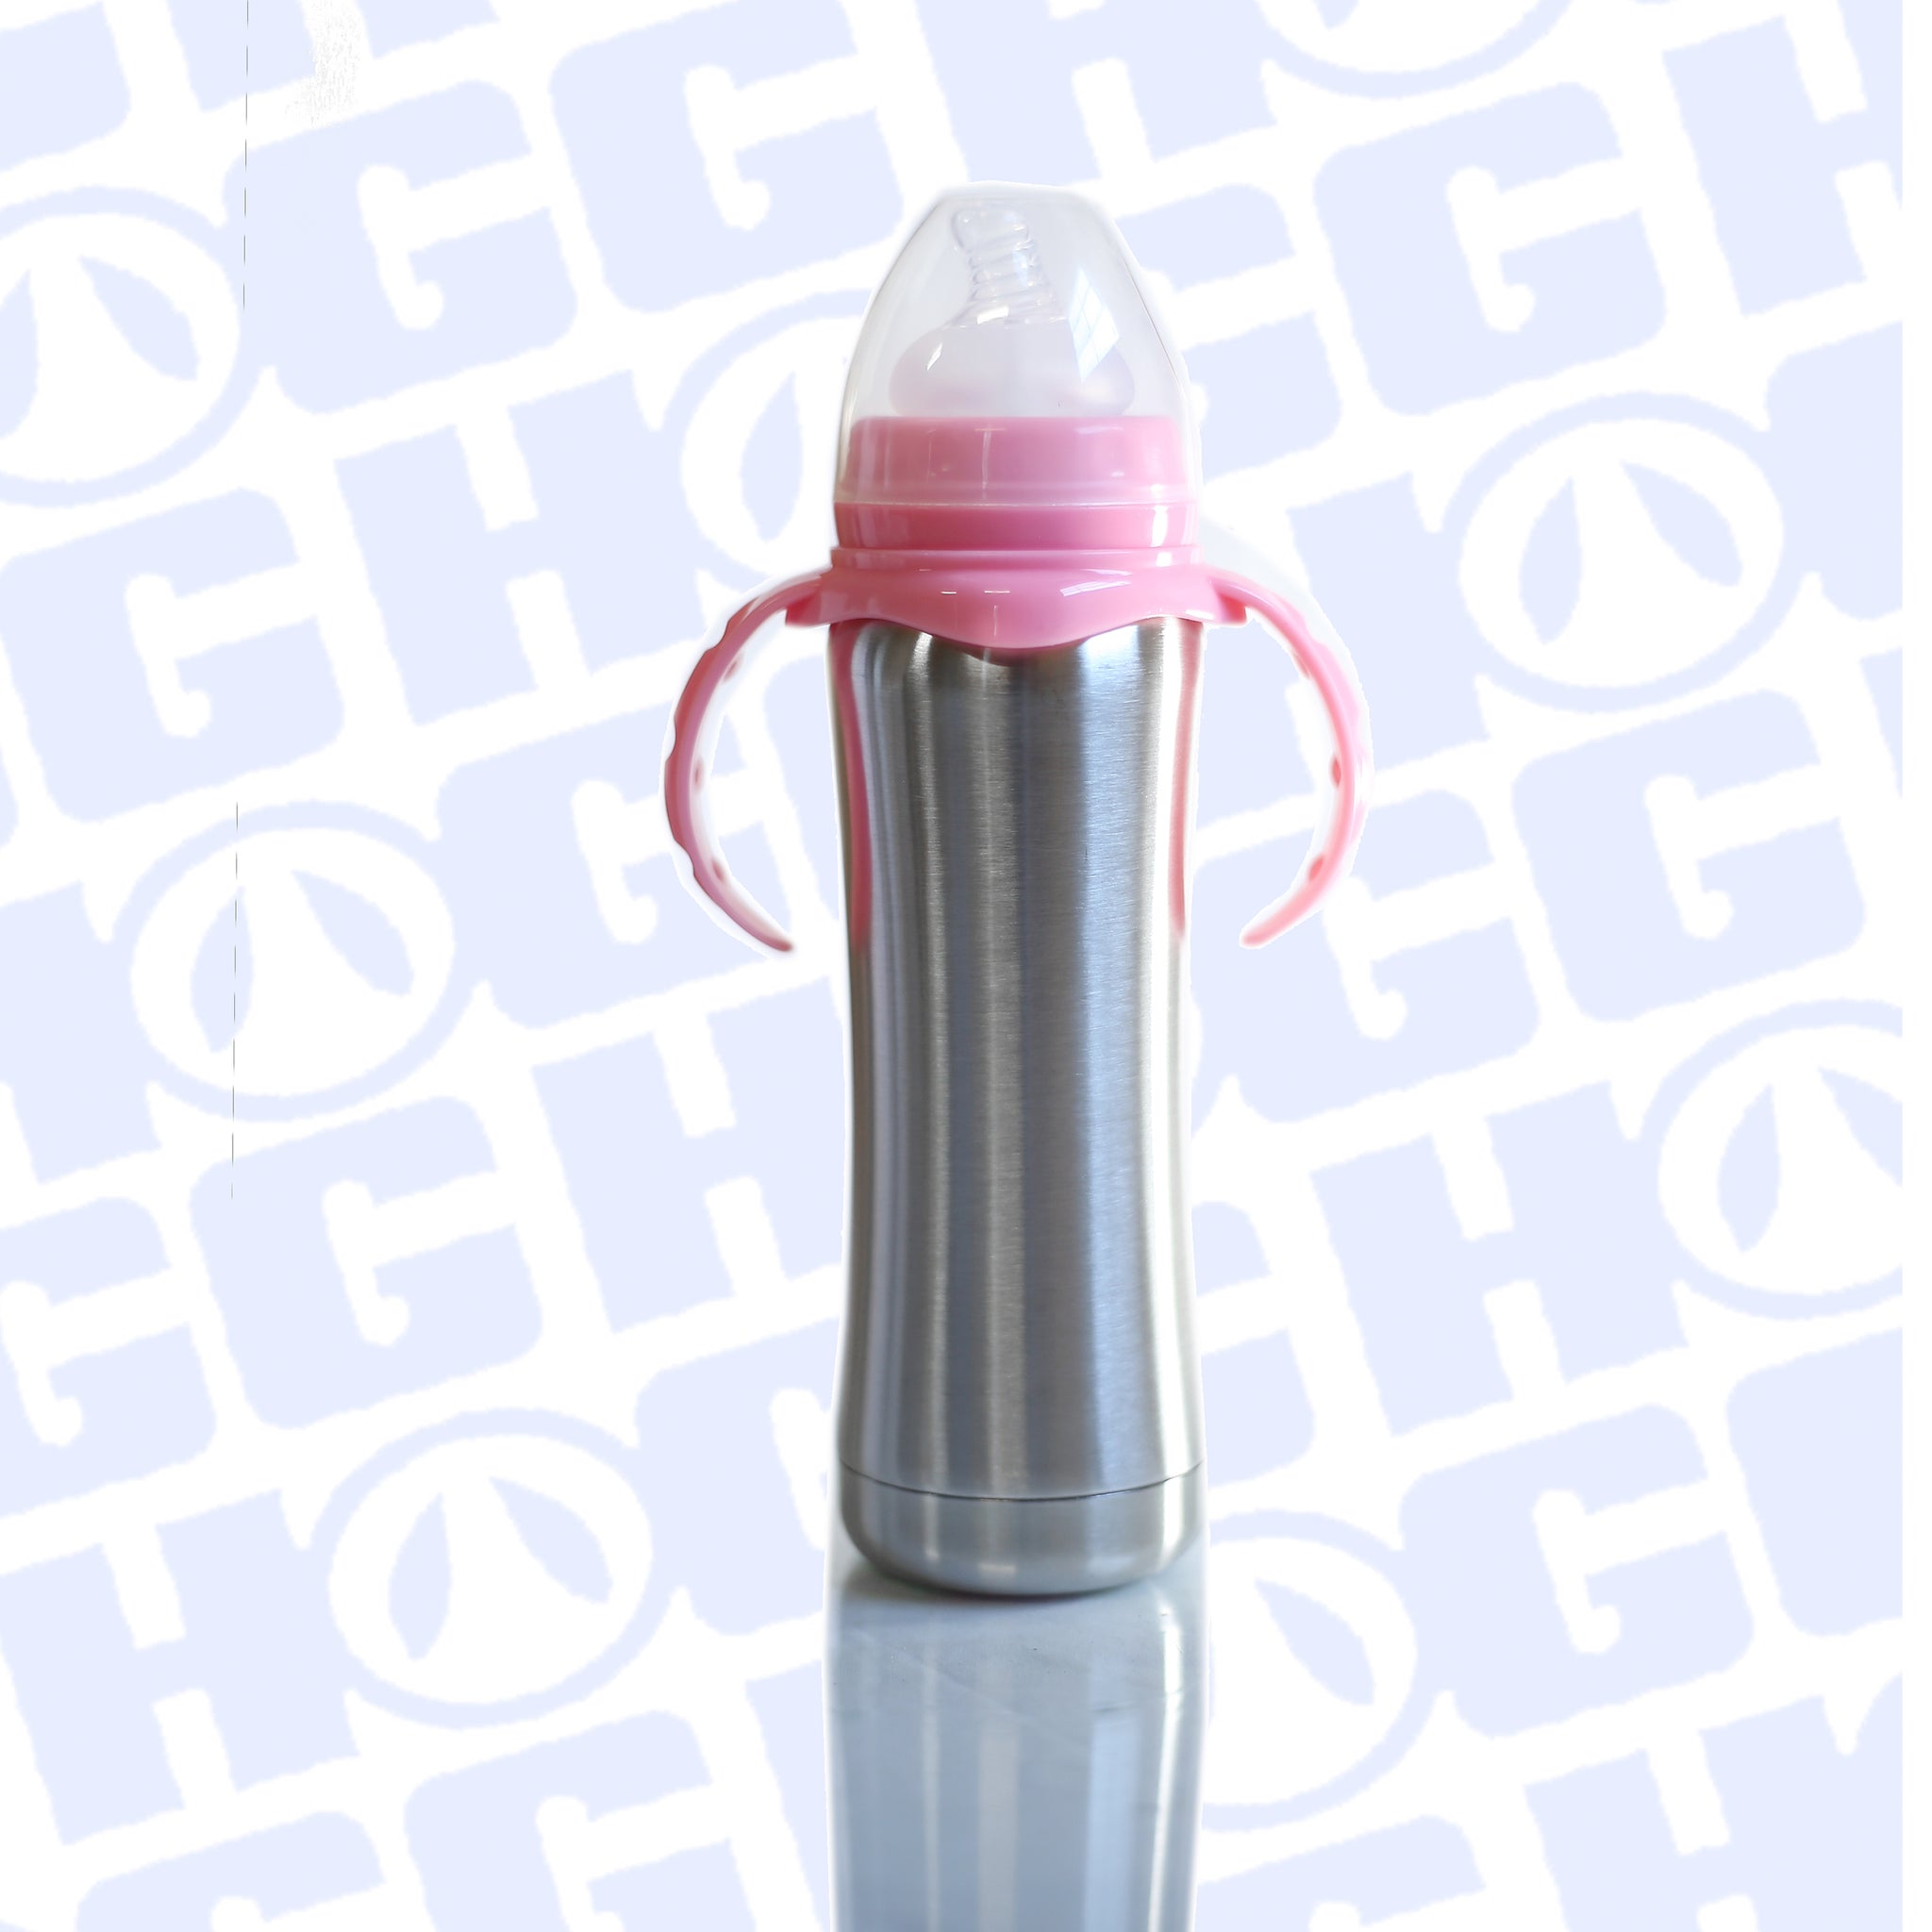 HOGG Customized Glittered Stainless Steel Baby Bottle 